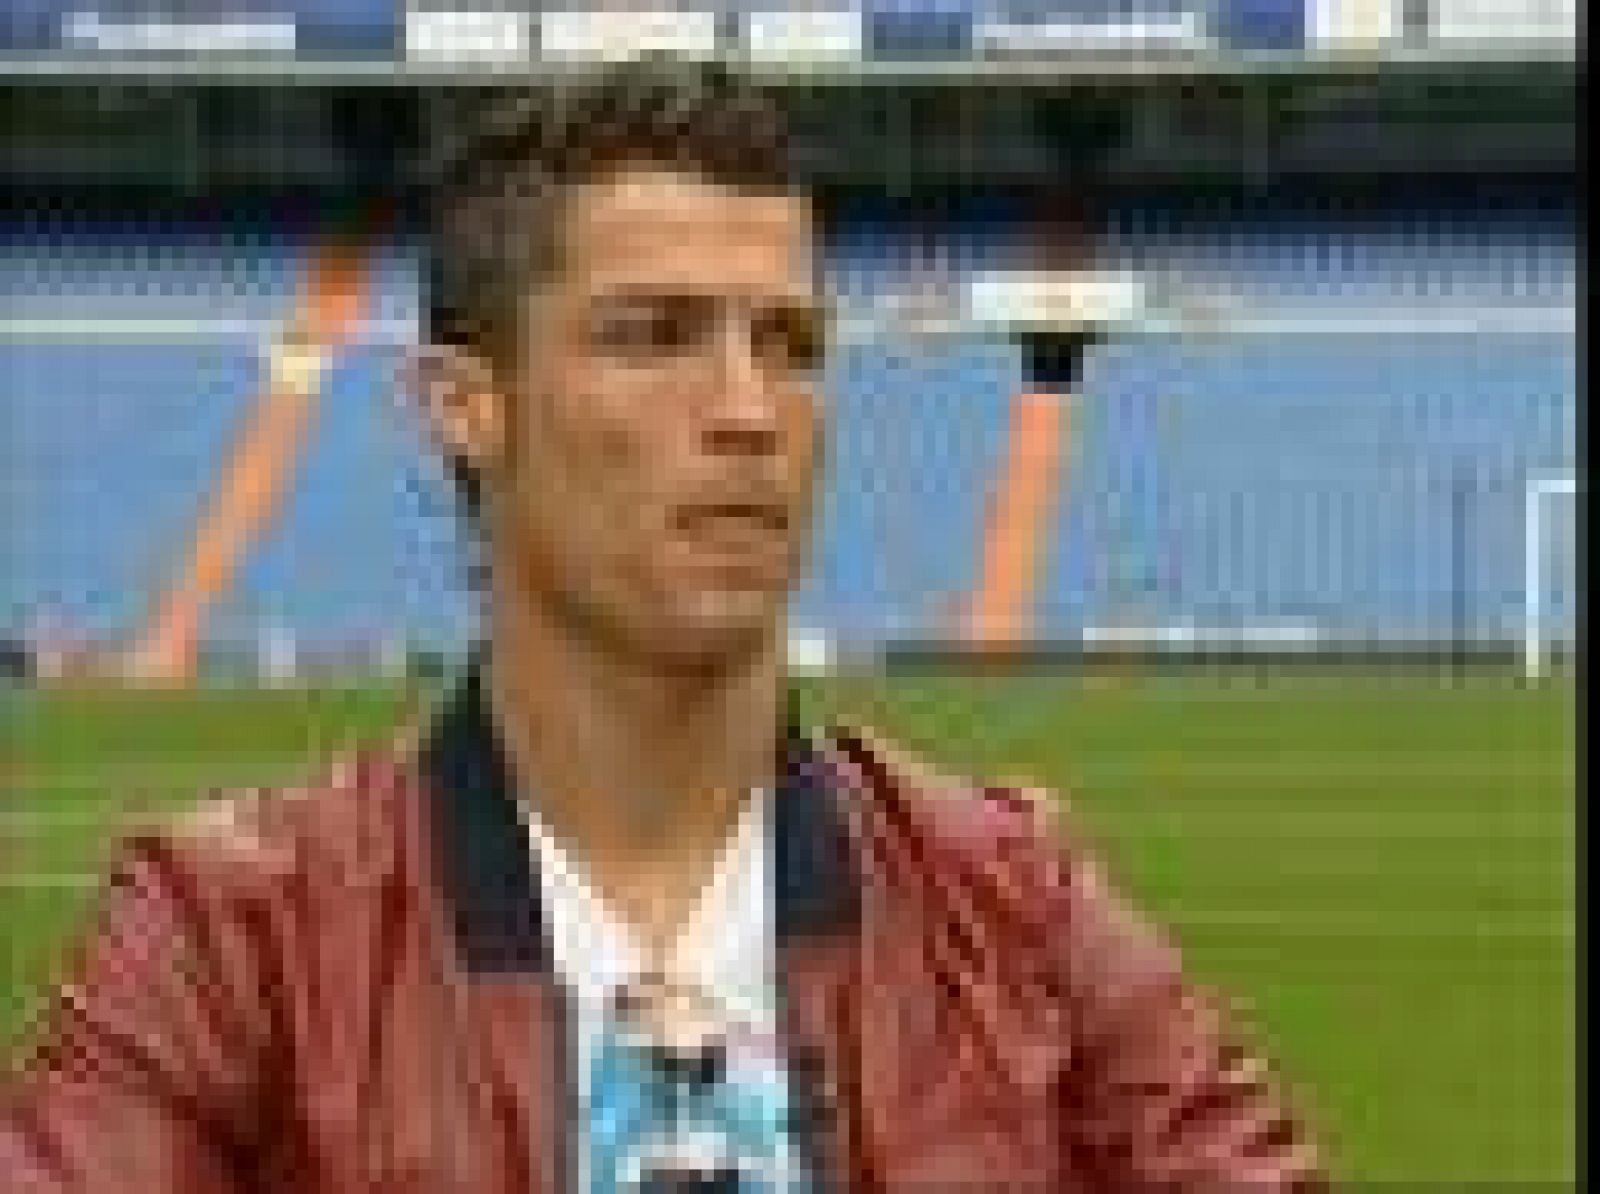 El equipo de TVE encabezado por Rubén León ha charlado con el futbolista del Real Madrid cristiano Ronaldo, en una entrevista en el césped del Santiago Bernabéu donde ha hablado sobre sus objetivos profesionales, su familia y sus 'famosas abdominales.